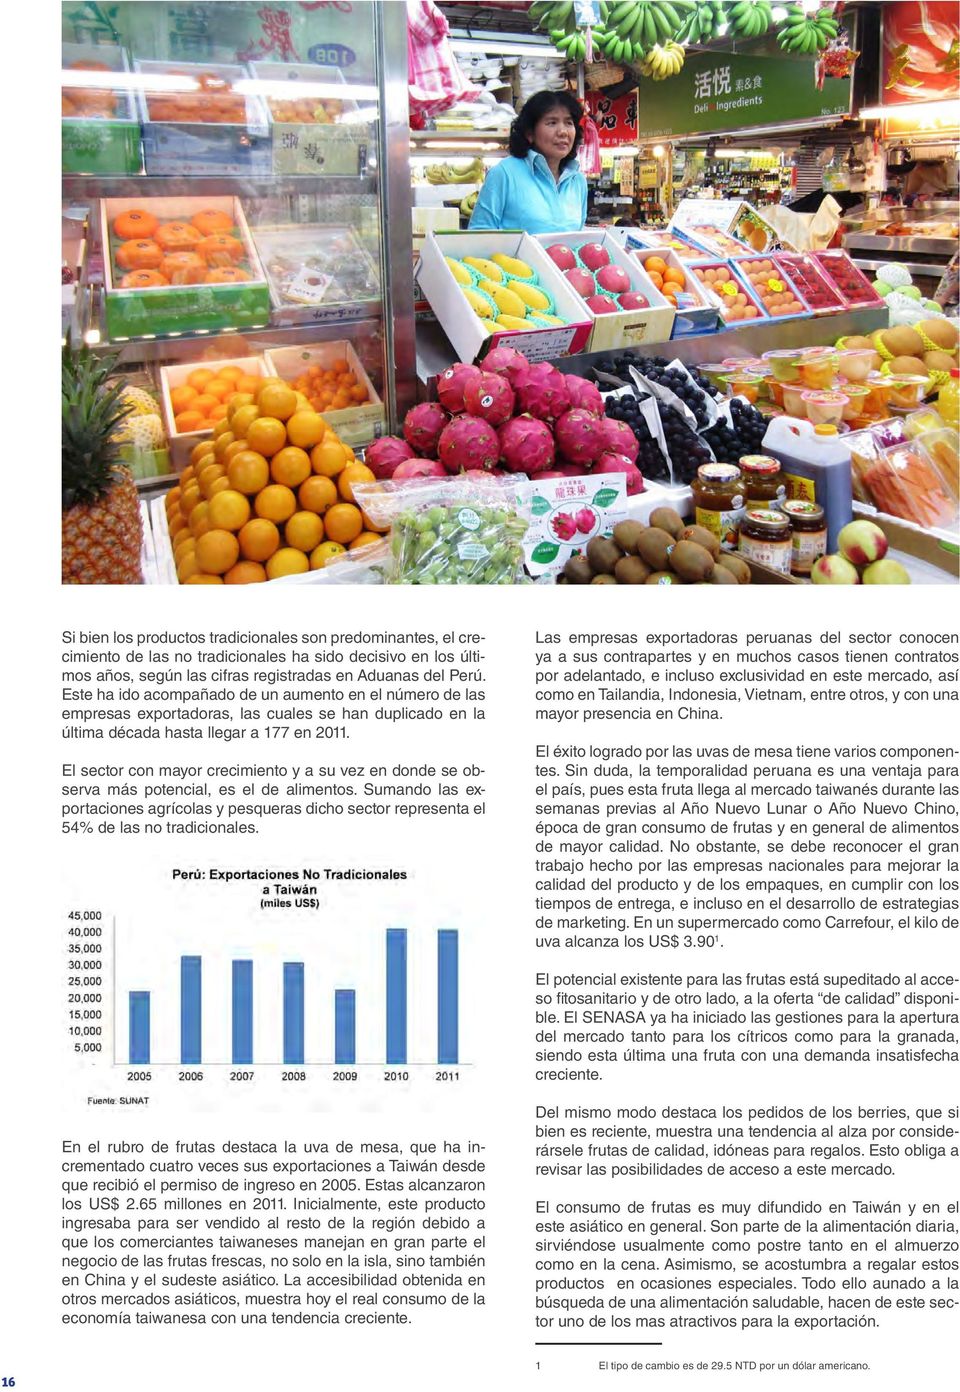 El sector con mayor crecimiento y a su vez en donde se observa más potencial, es el de alimentos.